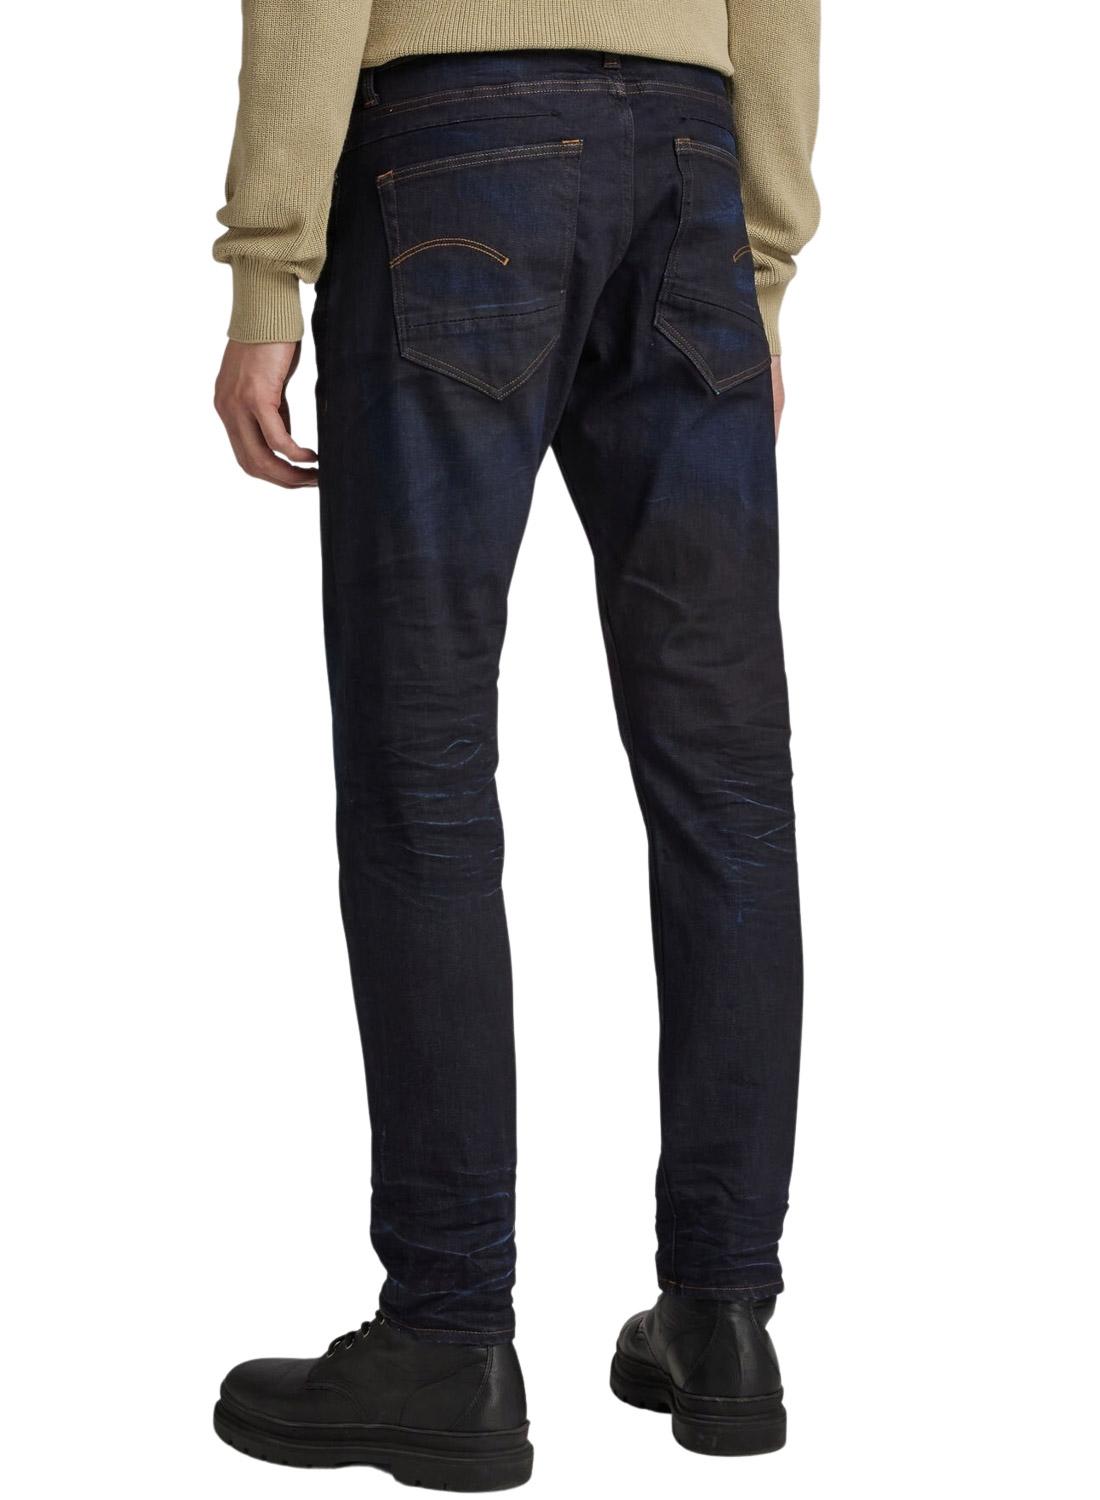 Pantaloni Jeans G-Star Staq Scuro per Uomo